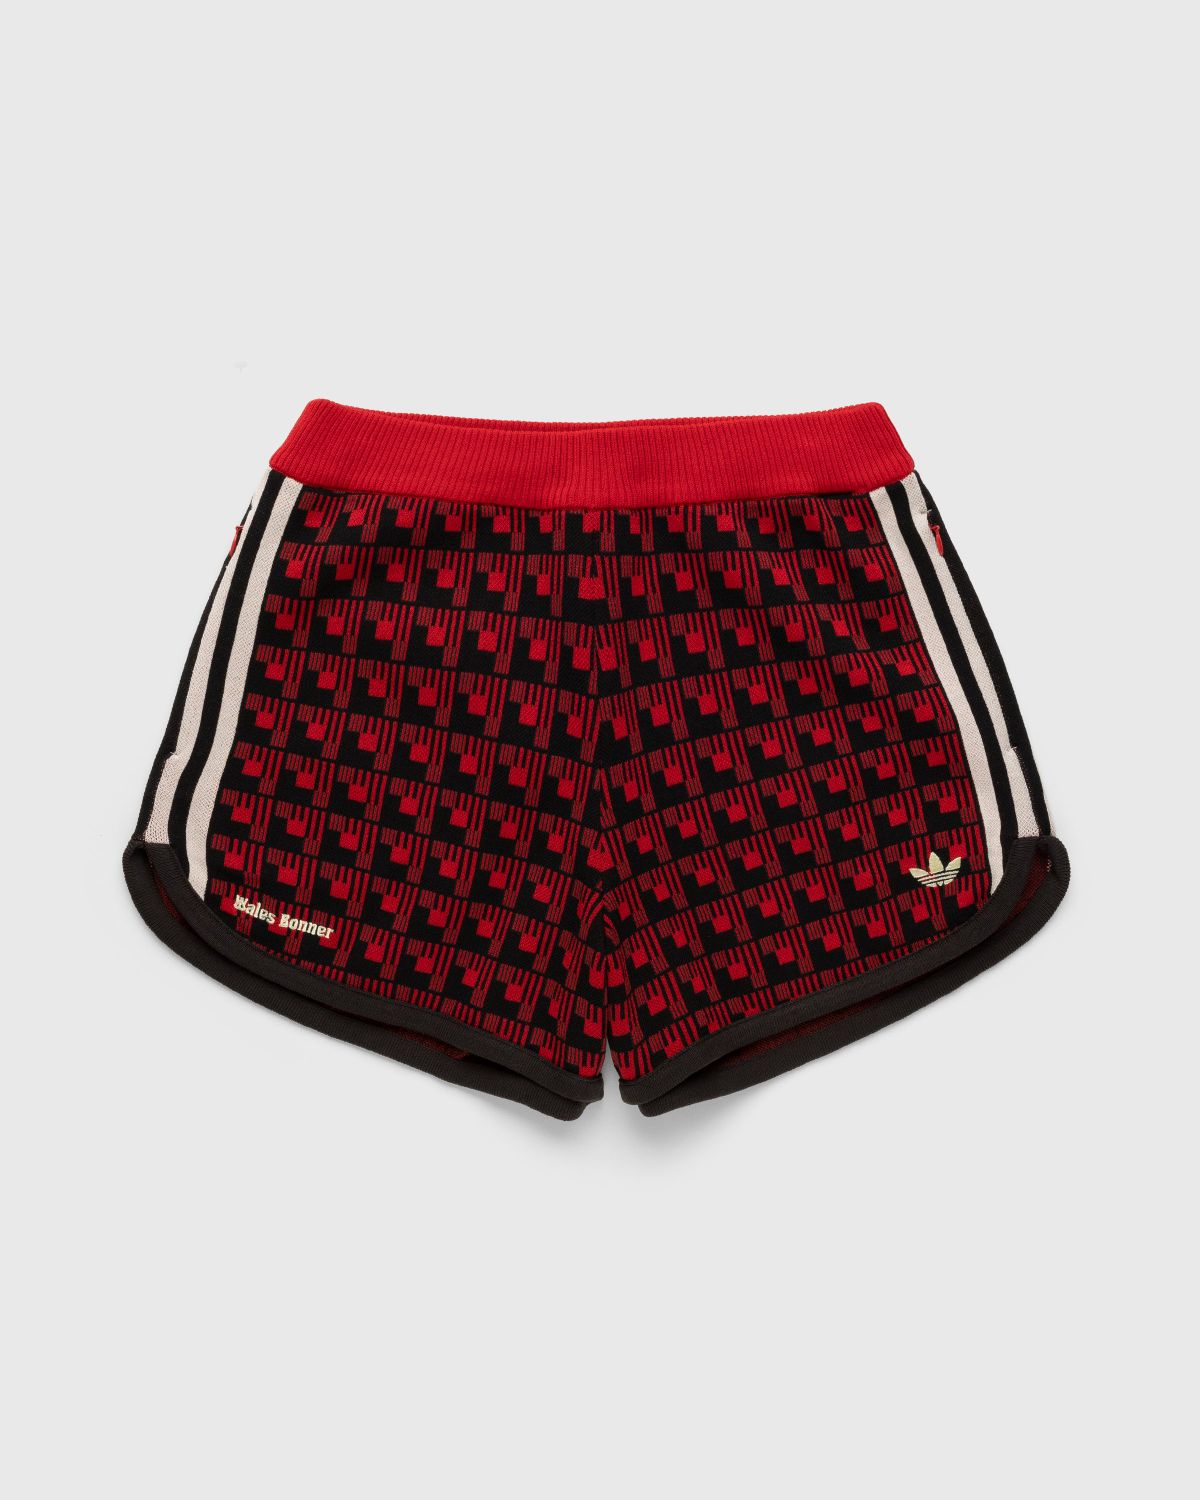 Adidas x Wales Bonner – WB Knit Shorts Scarlet/Black - Shorts - Red - Image 1